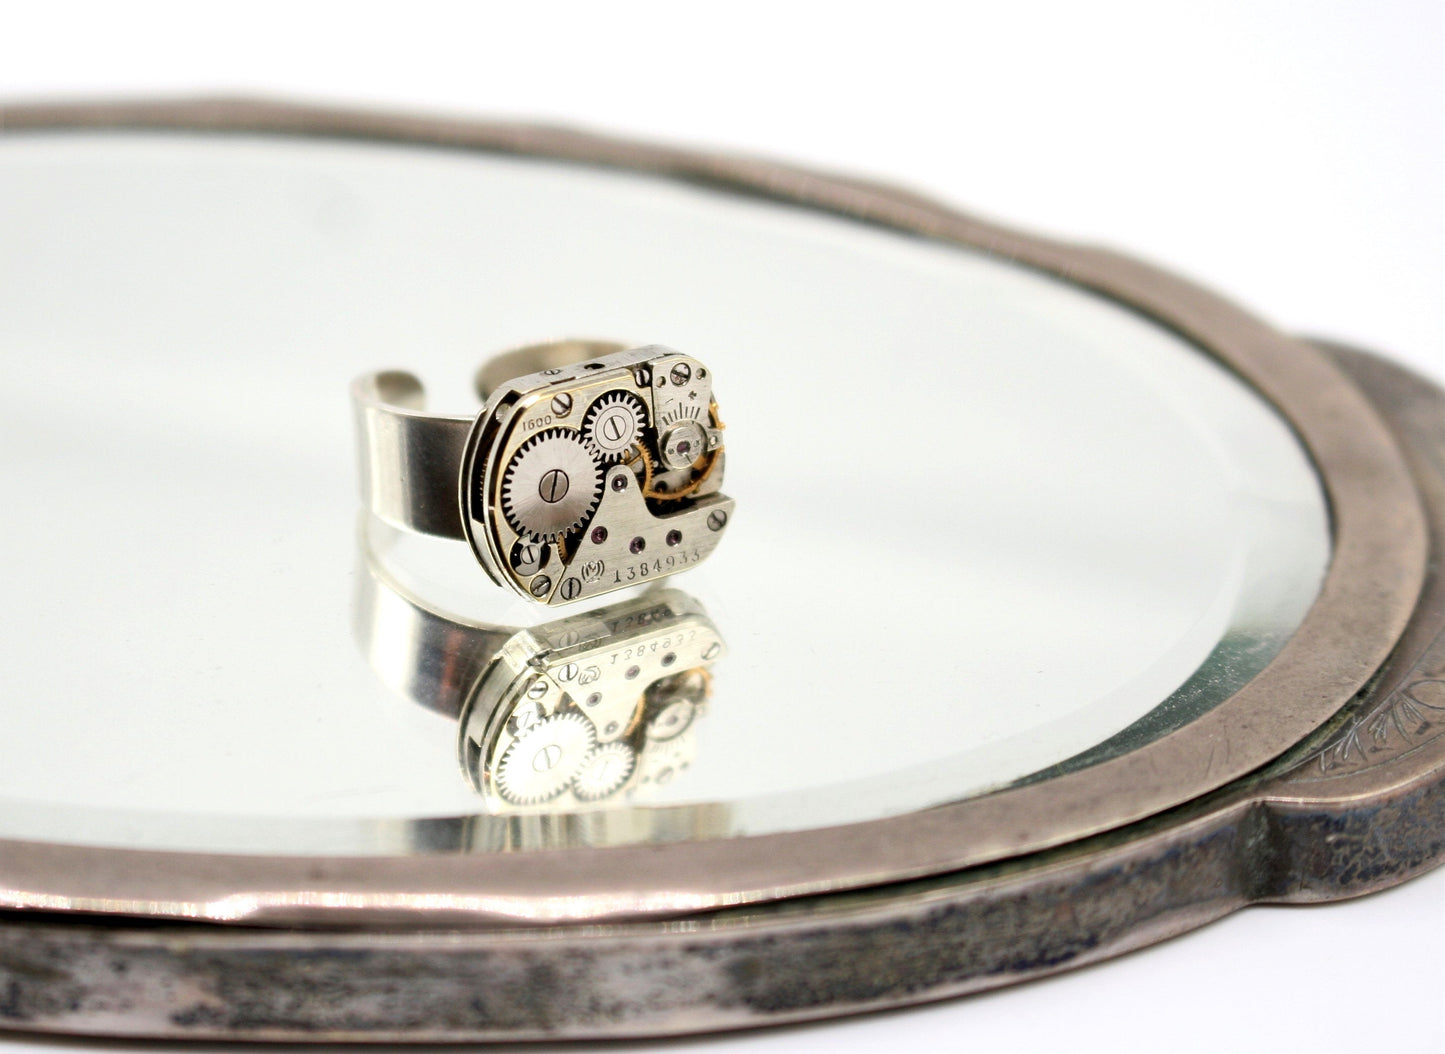 Anello meccanismo di orologio d'epoca in argento 925 (base regolabile), realizzato con un movimento di orologio svizzero art.258 - Glimoire